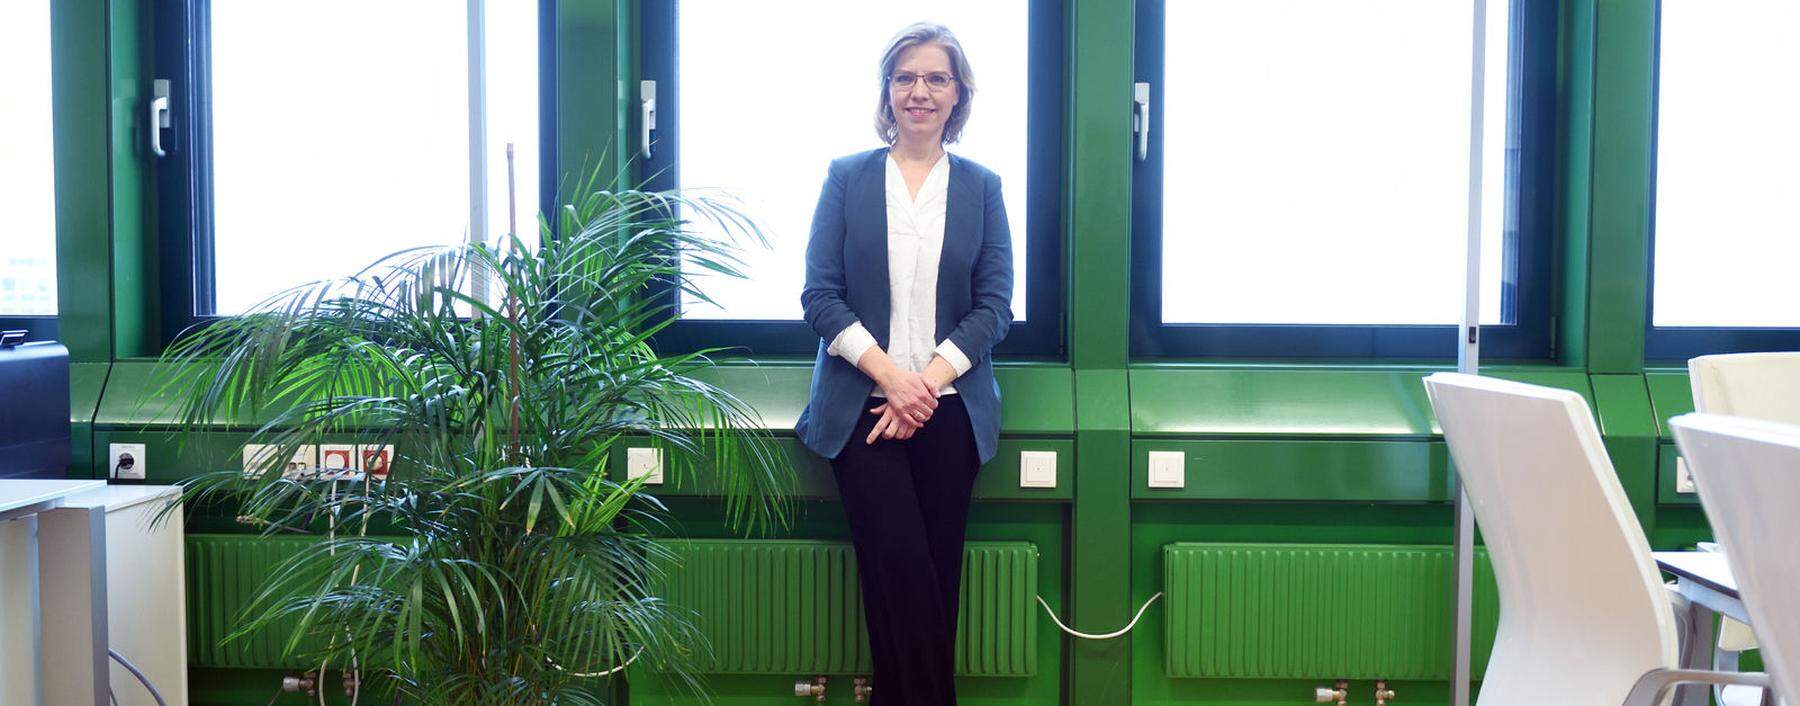 Geht die Umweltpolitik ziemlich anders an als ihre ÖVP-Vorgänger: Ministerin Leonore Gewessler (Grüne). 